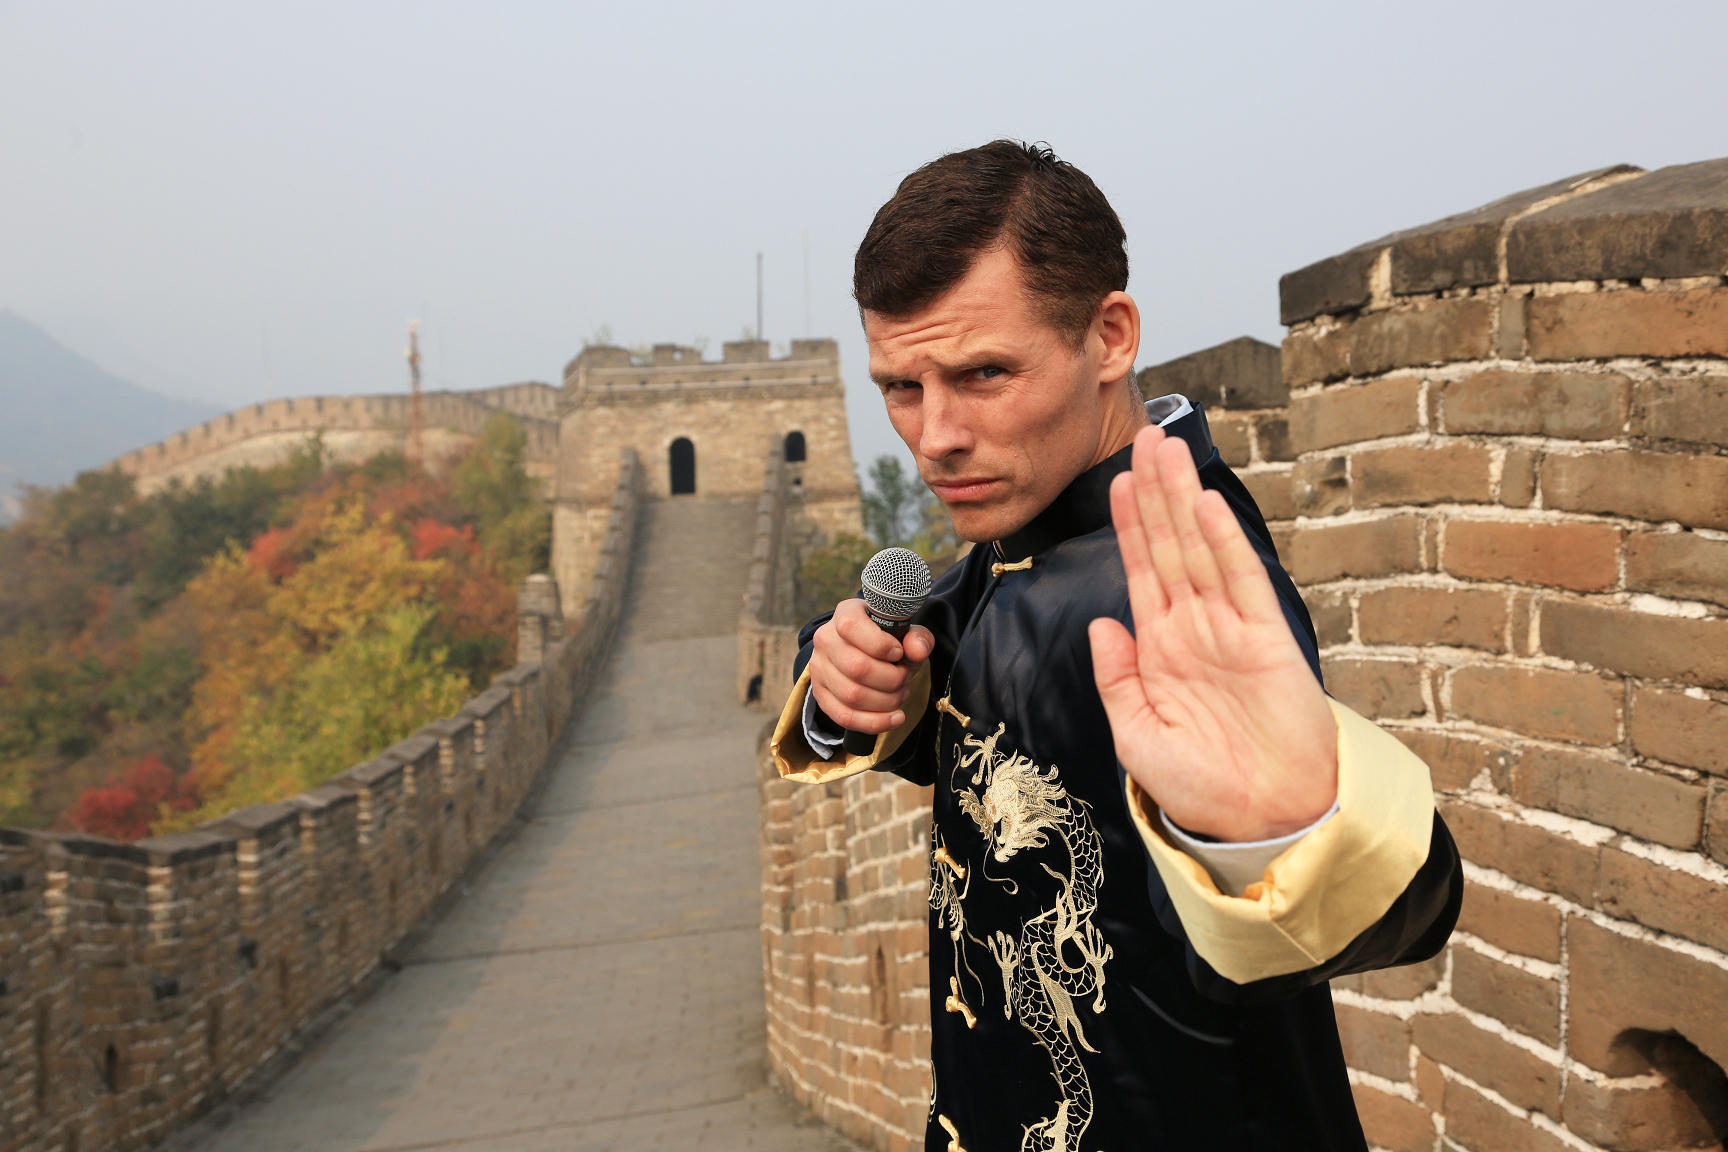 Des Bishop, Beijing-based stand-up comedian.